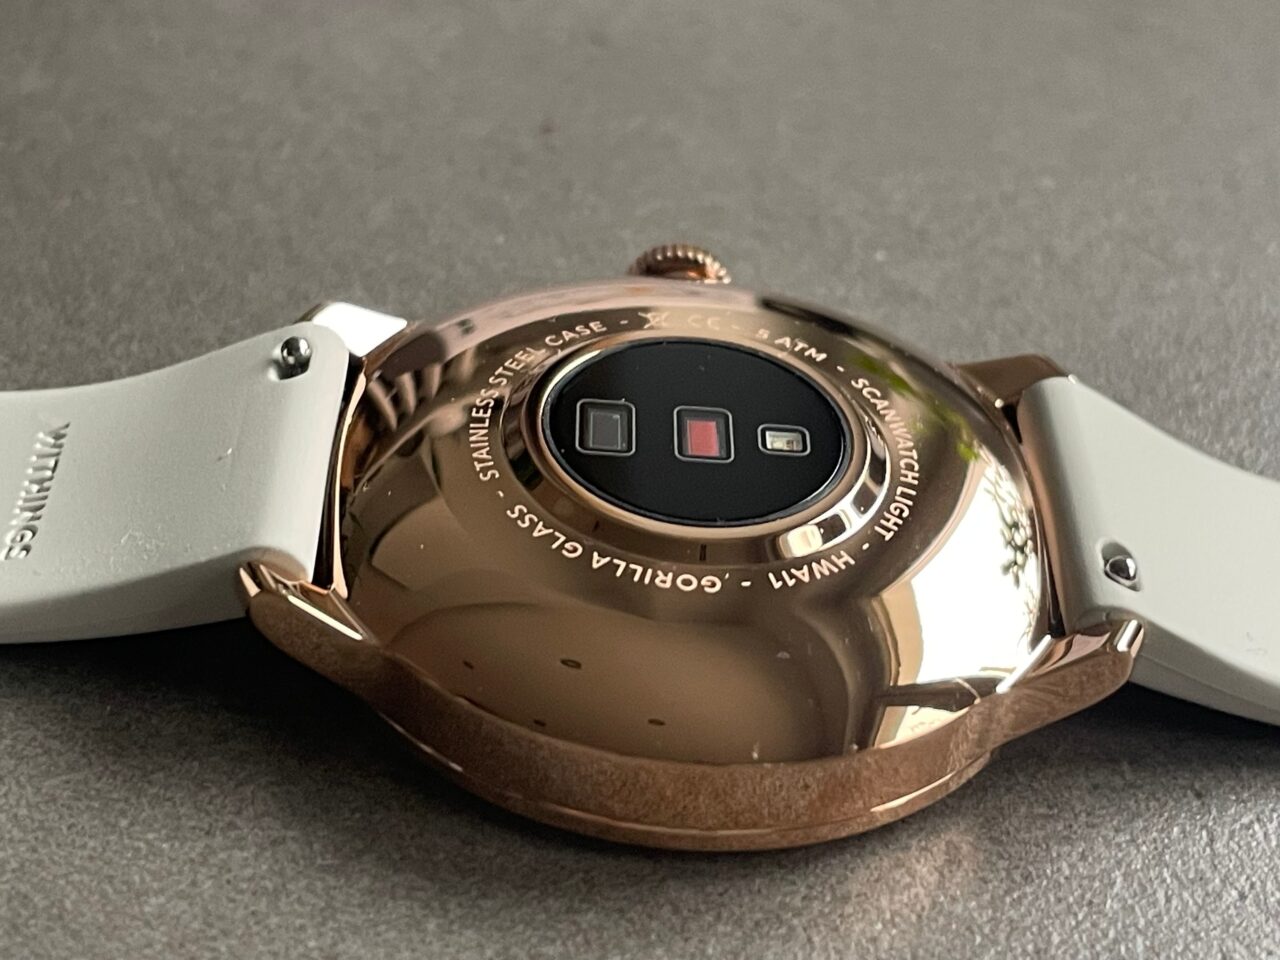 Różowe złoto smartwatch z wyświetlaczem odwróconym do dołu, pokazujący tylną część z czujnikami i napisami, na szarym tle.